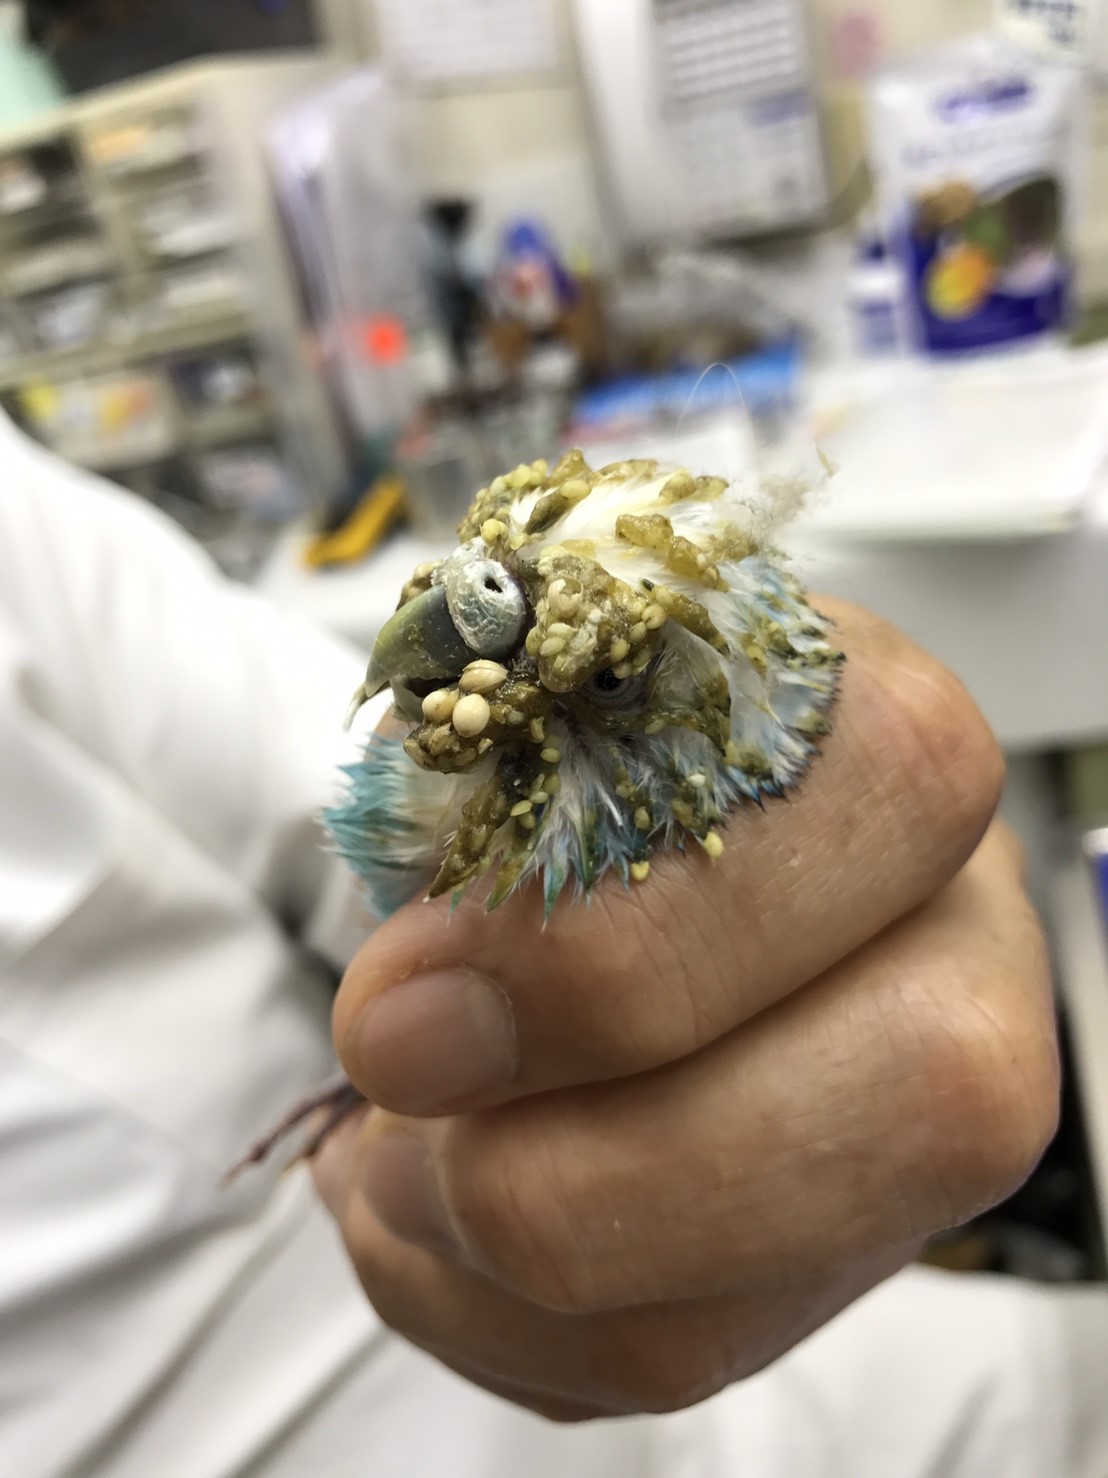 オウム類嘴羽毛病 Pbfdv に罹患したセキセイインコ 千葉県の佐倉しらい動物病院